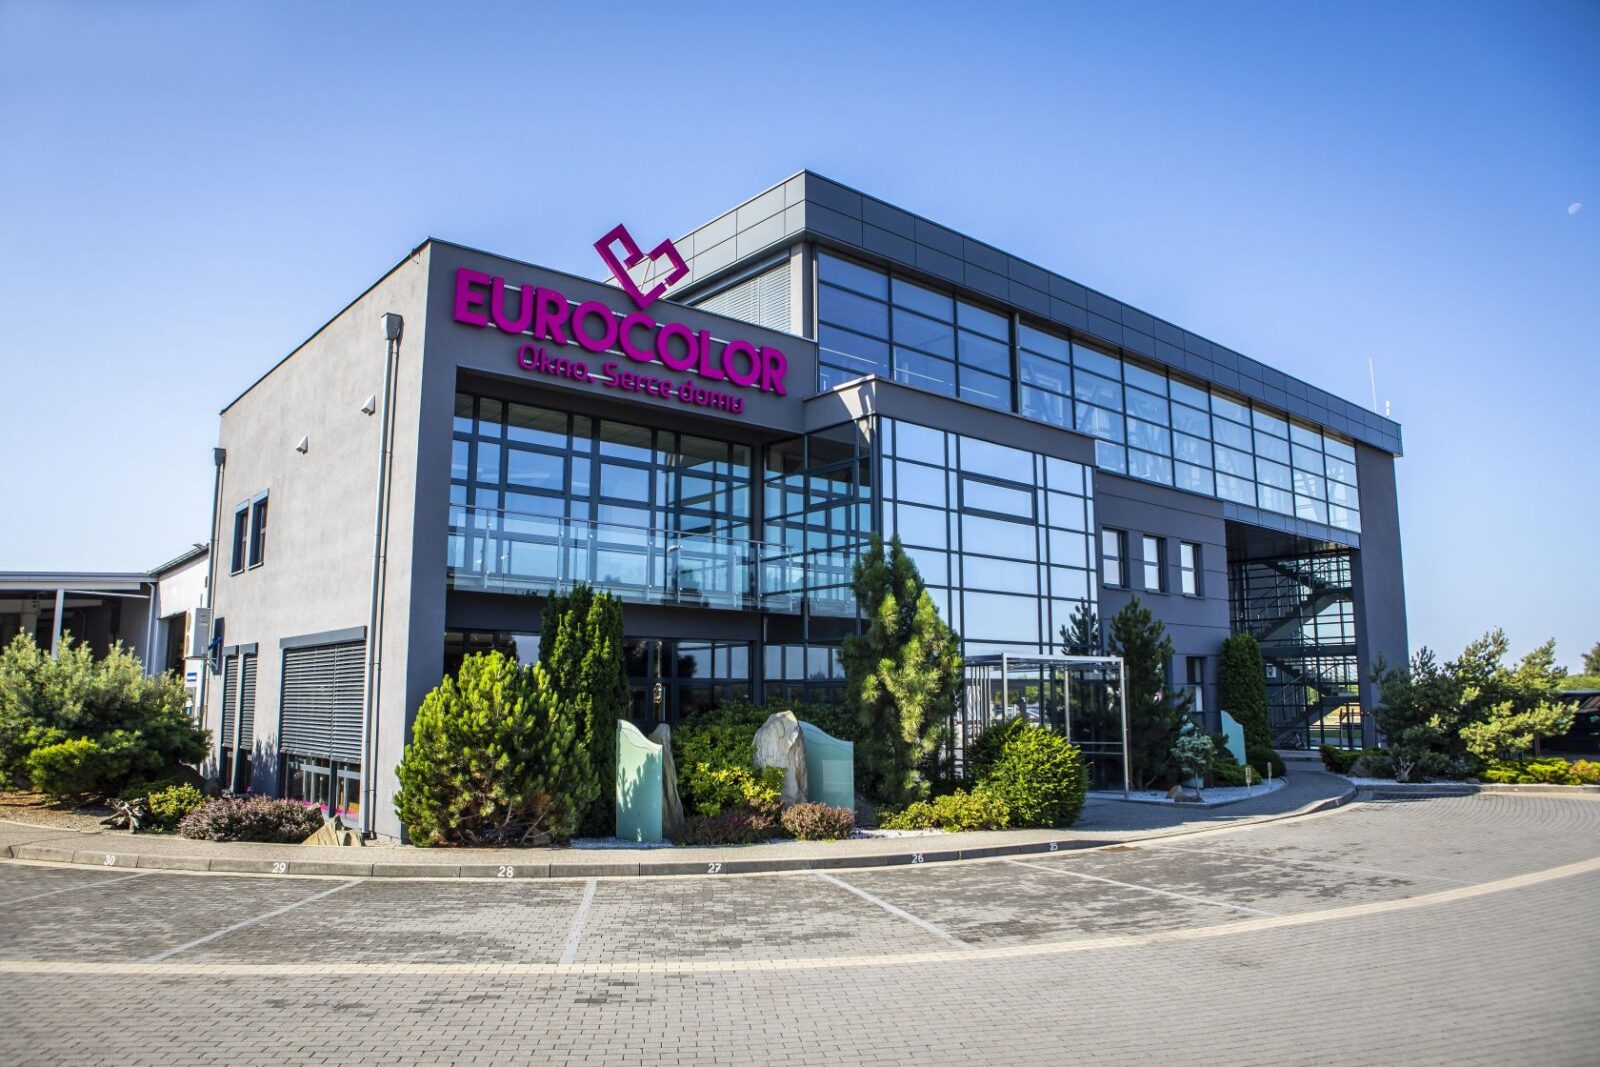 Fenster EUROCOLOR: Meinungen über die Produkte des polnischen Herstellers